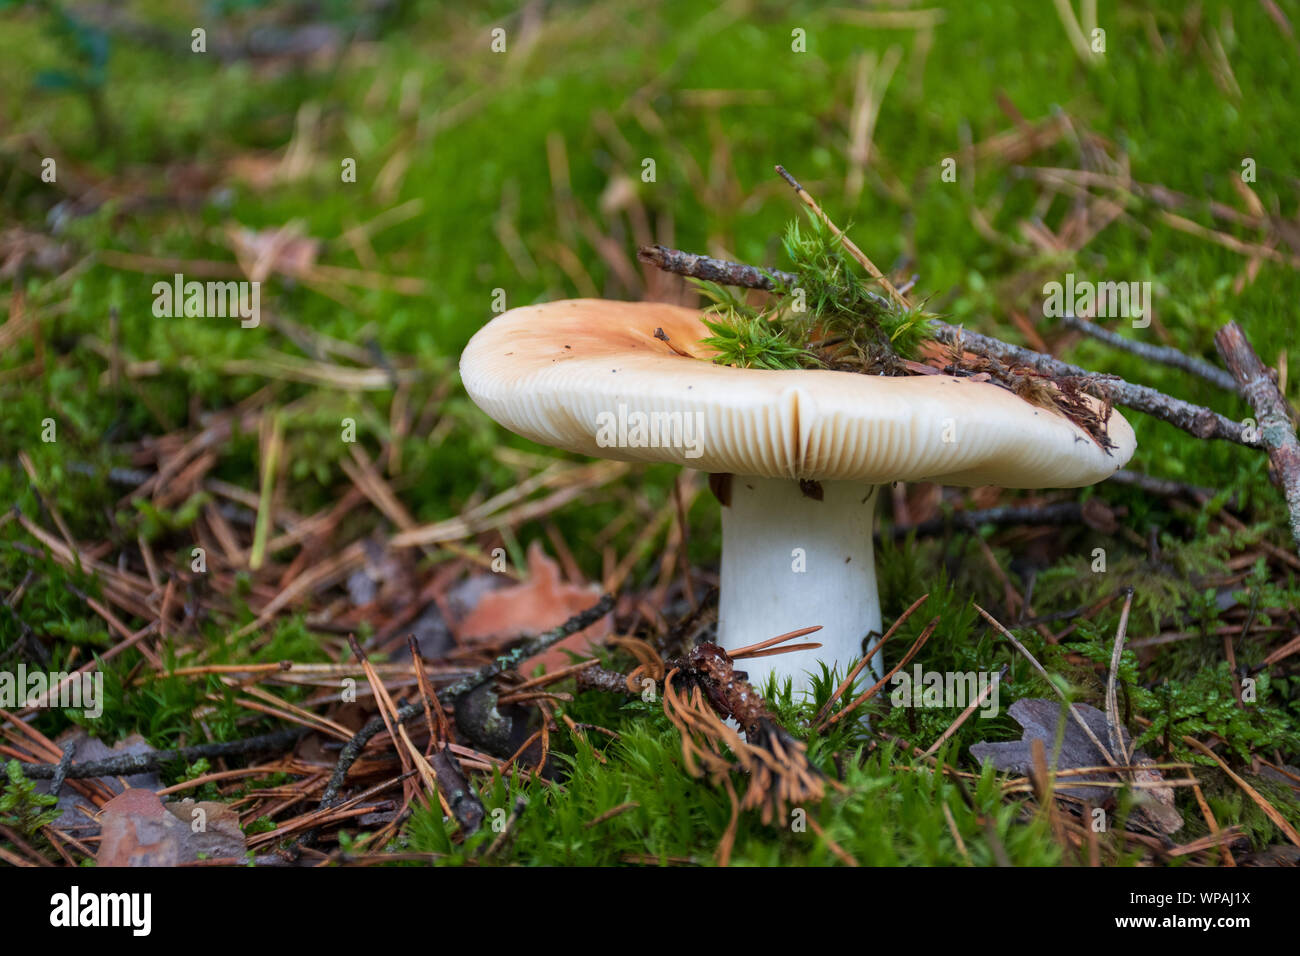 Edibili bianco nuovo nato fungo con cappuccio in moss autunno sfondo di foresta. Il fungo nell'ambiente naturale. Grosso fungo macro close up Foto Stock